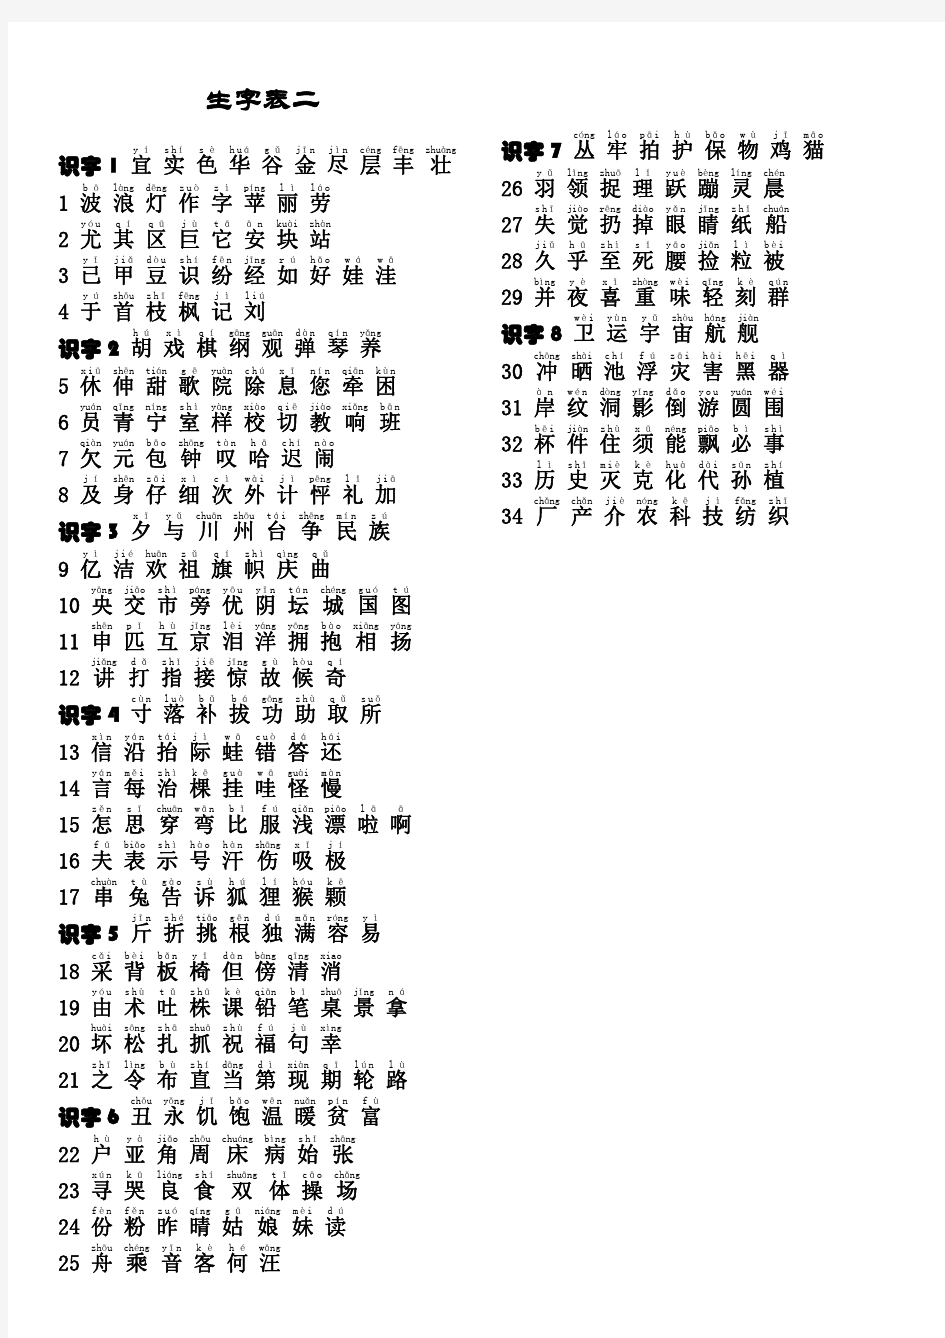 二年级上册语文生字表(拼音版)